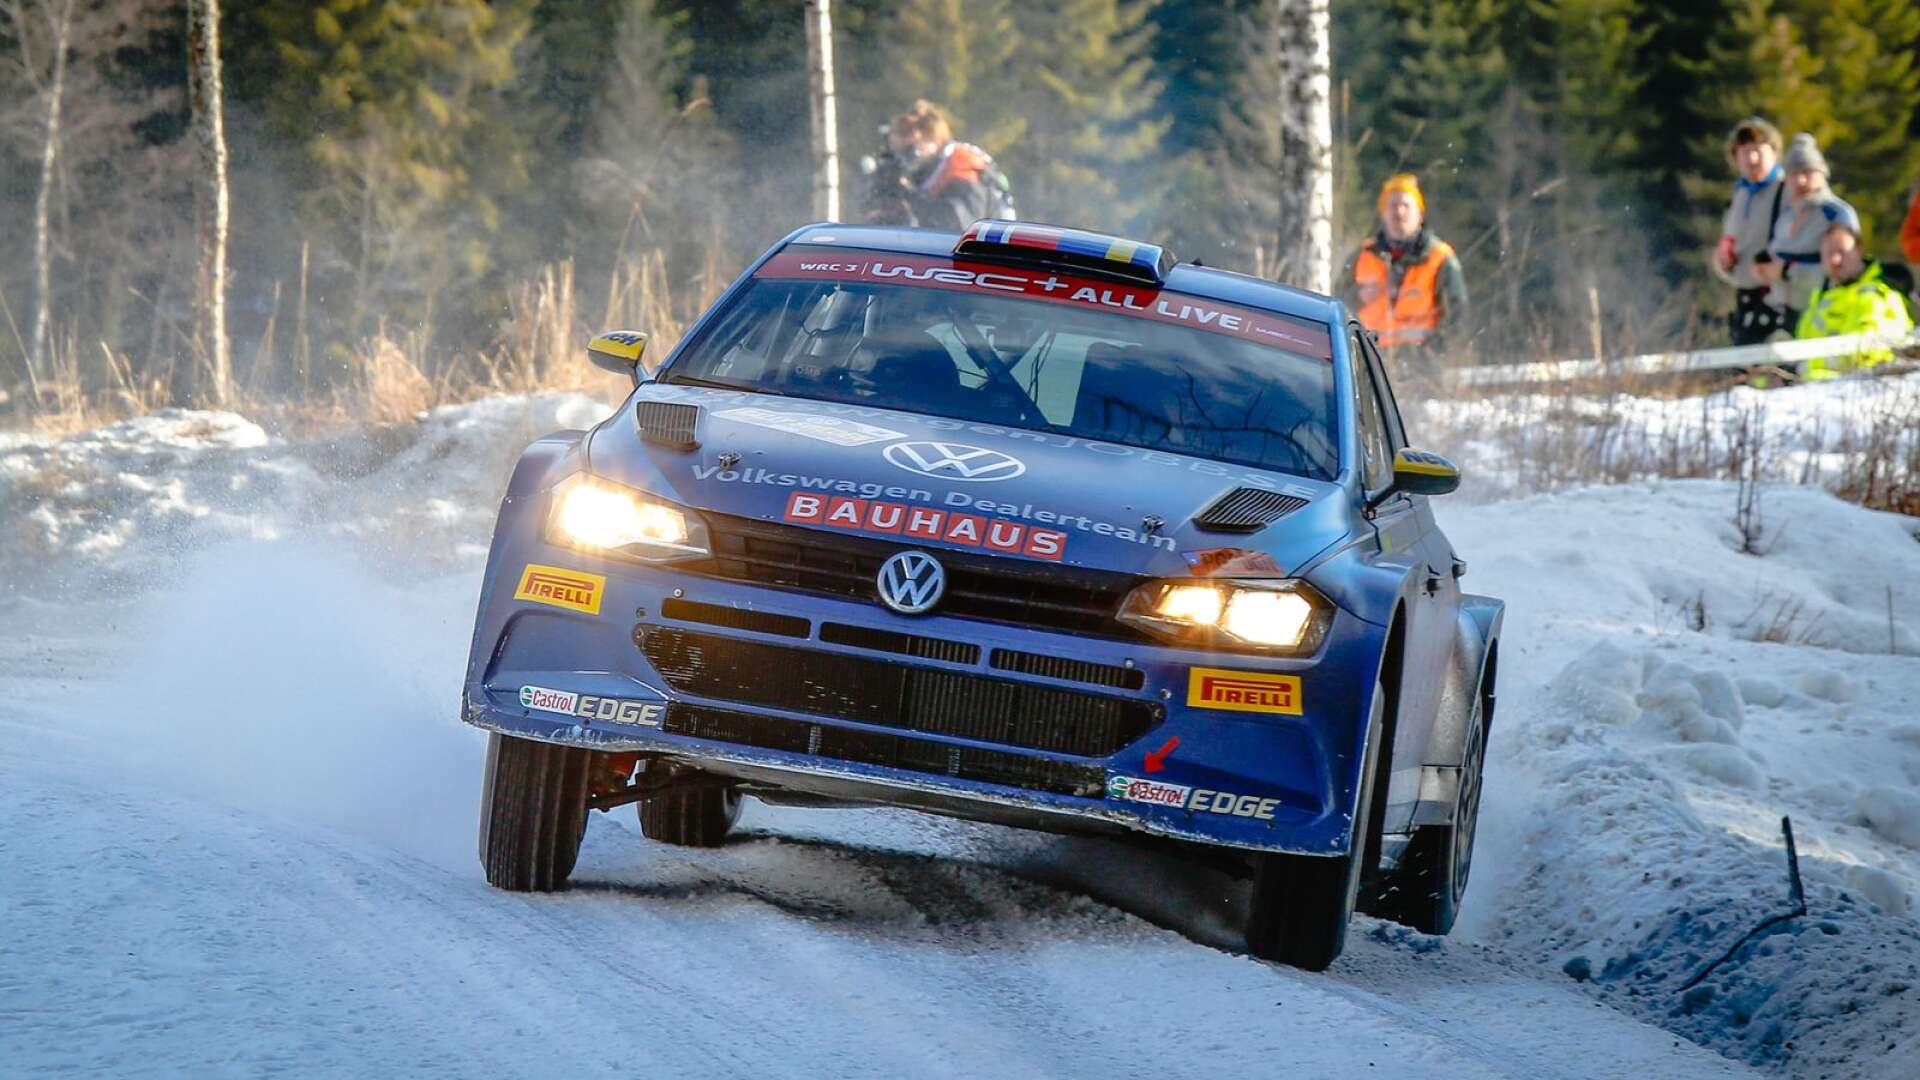 Till helgen blir det årspremiär i rally för rallycrossmästaren Johan Kristoffersson.